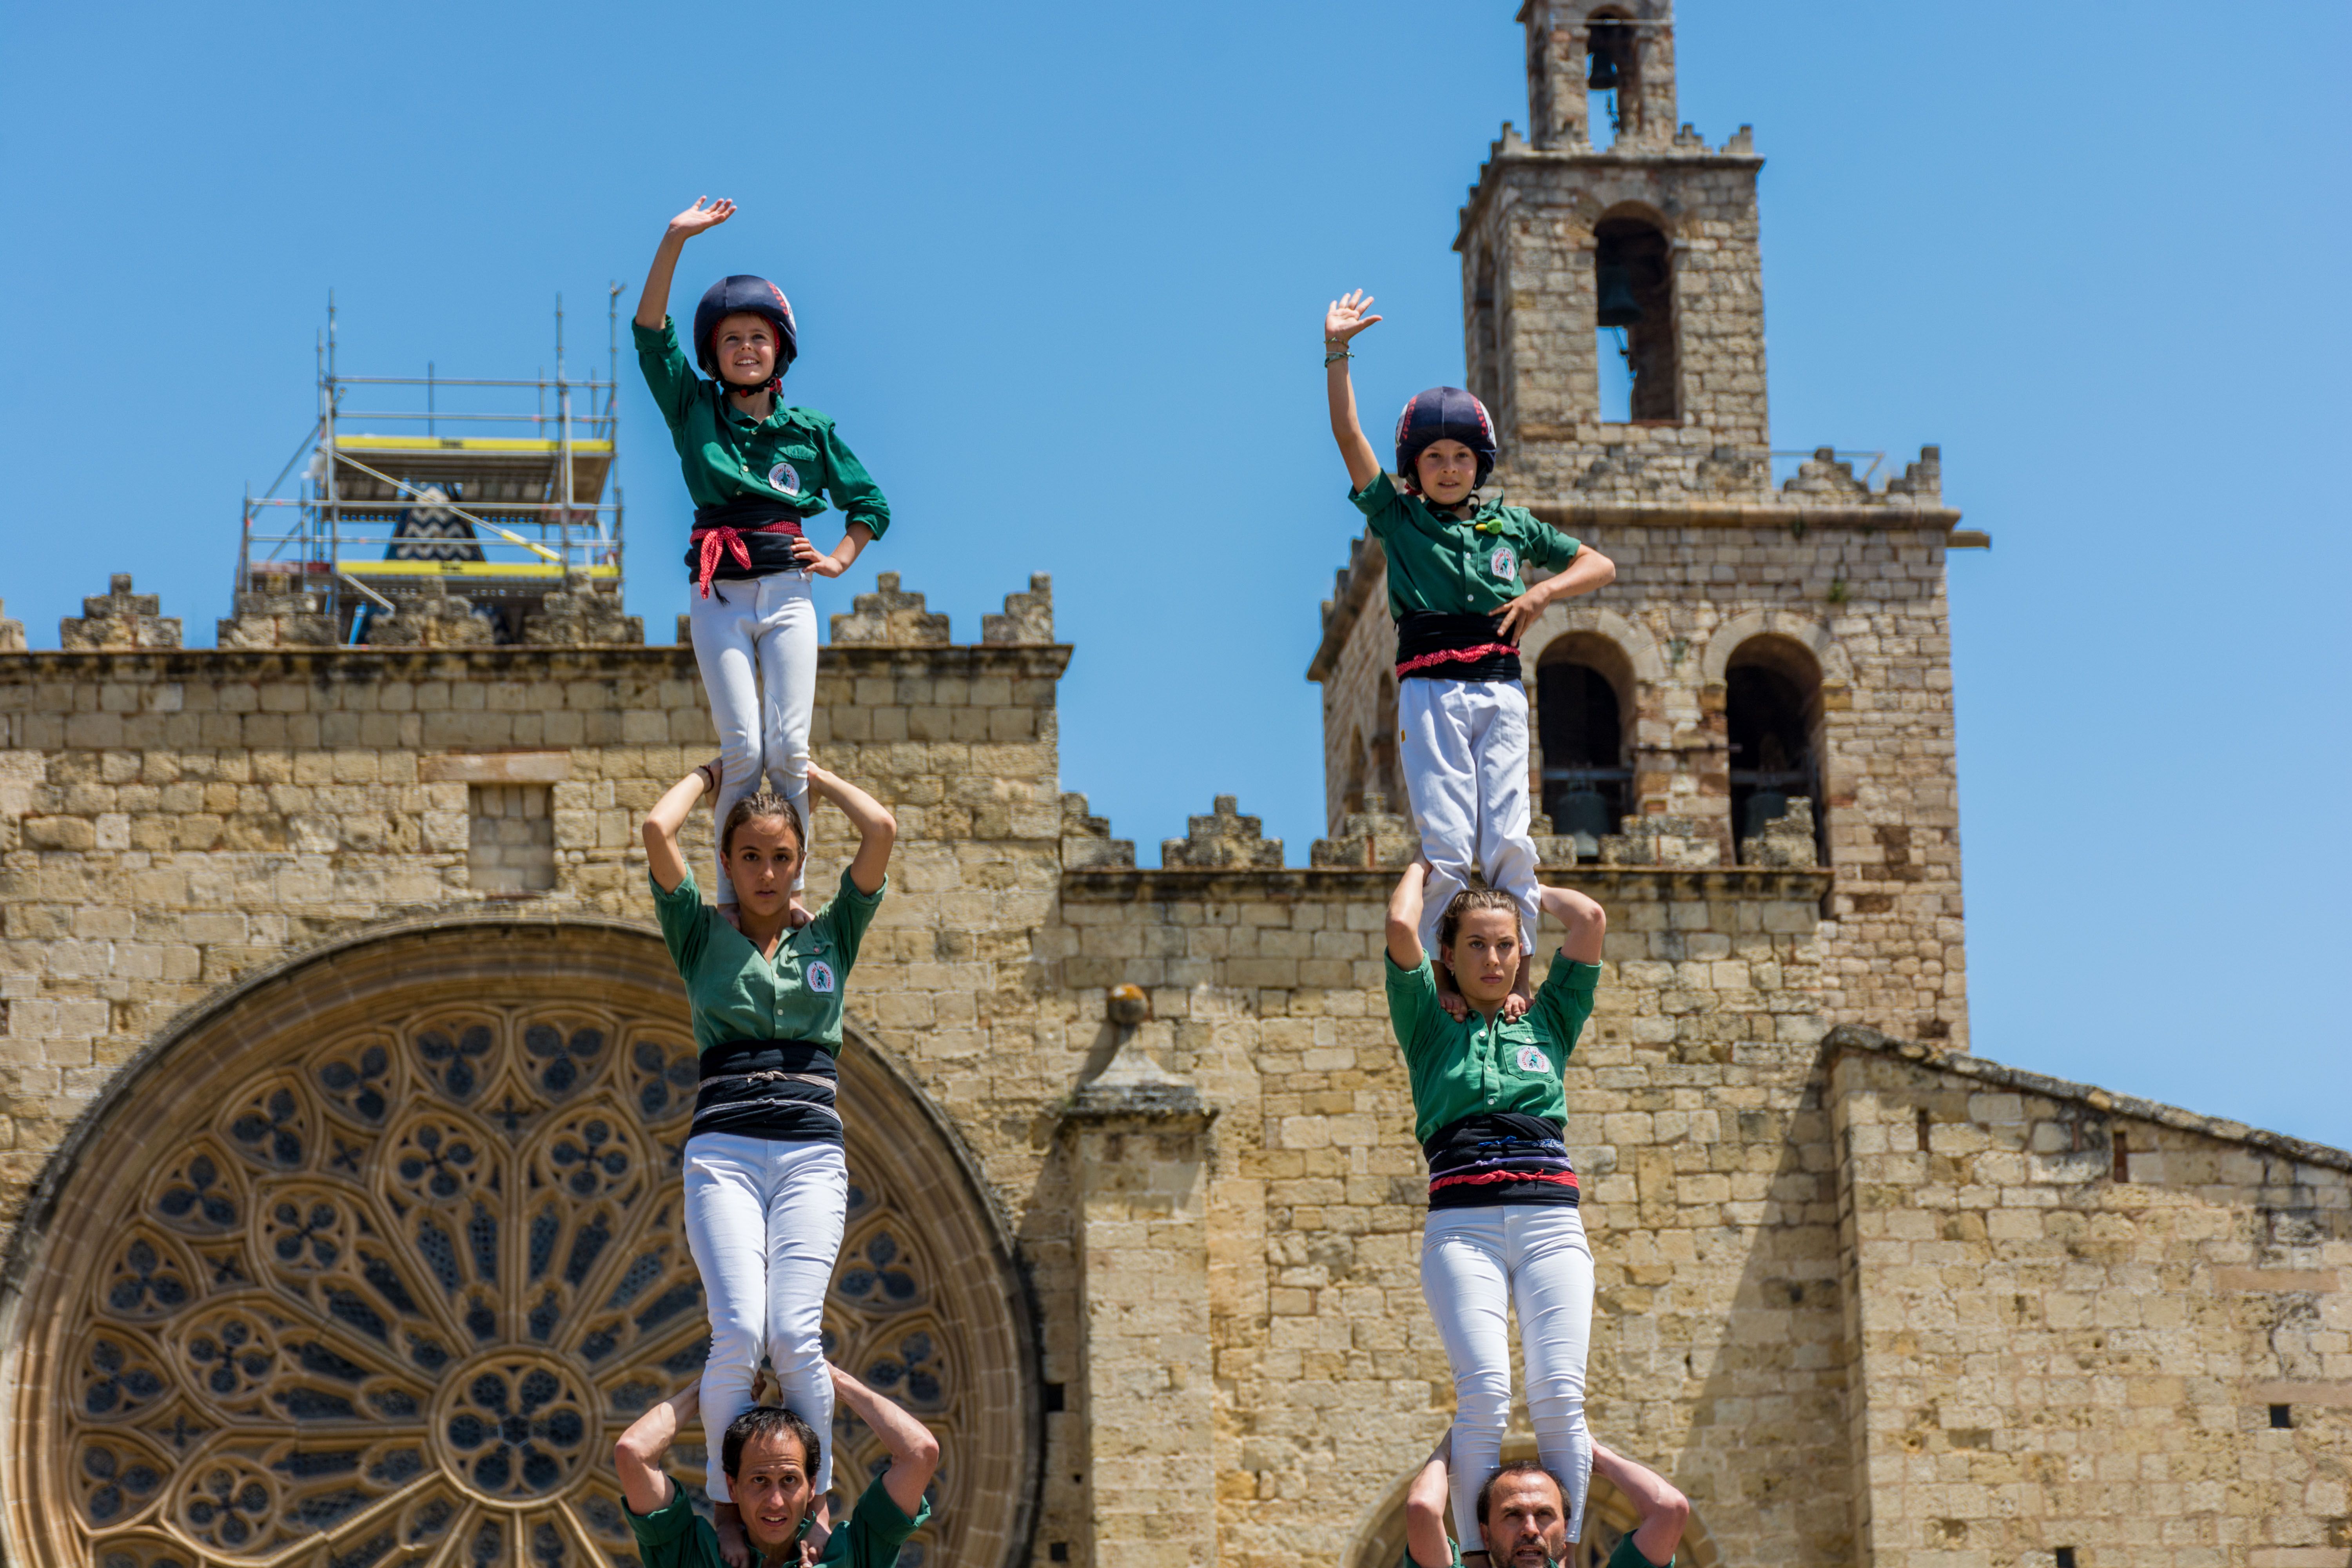 Els Castellers de Sant Cugat a la Diada de Sant Ponç. FOTO: Carmelo Jiménez